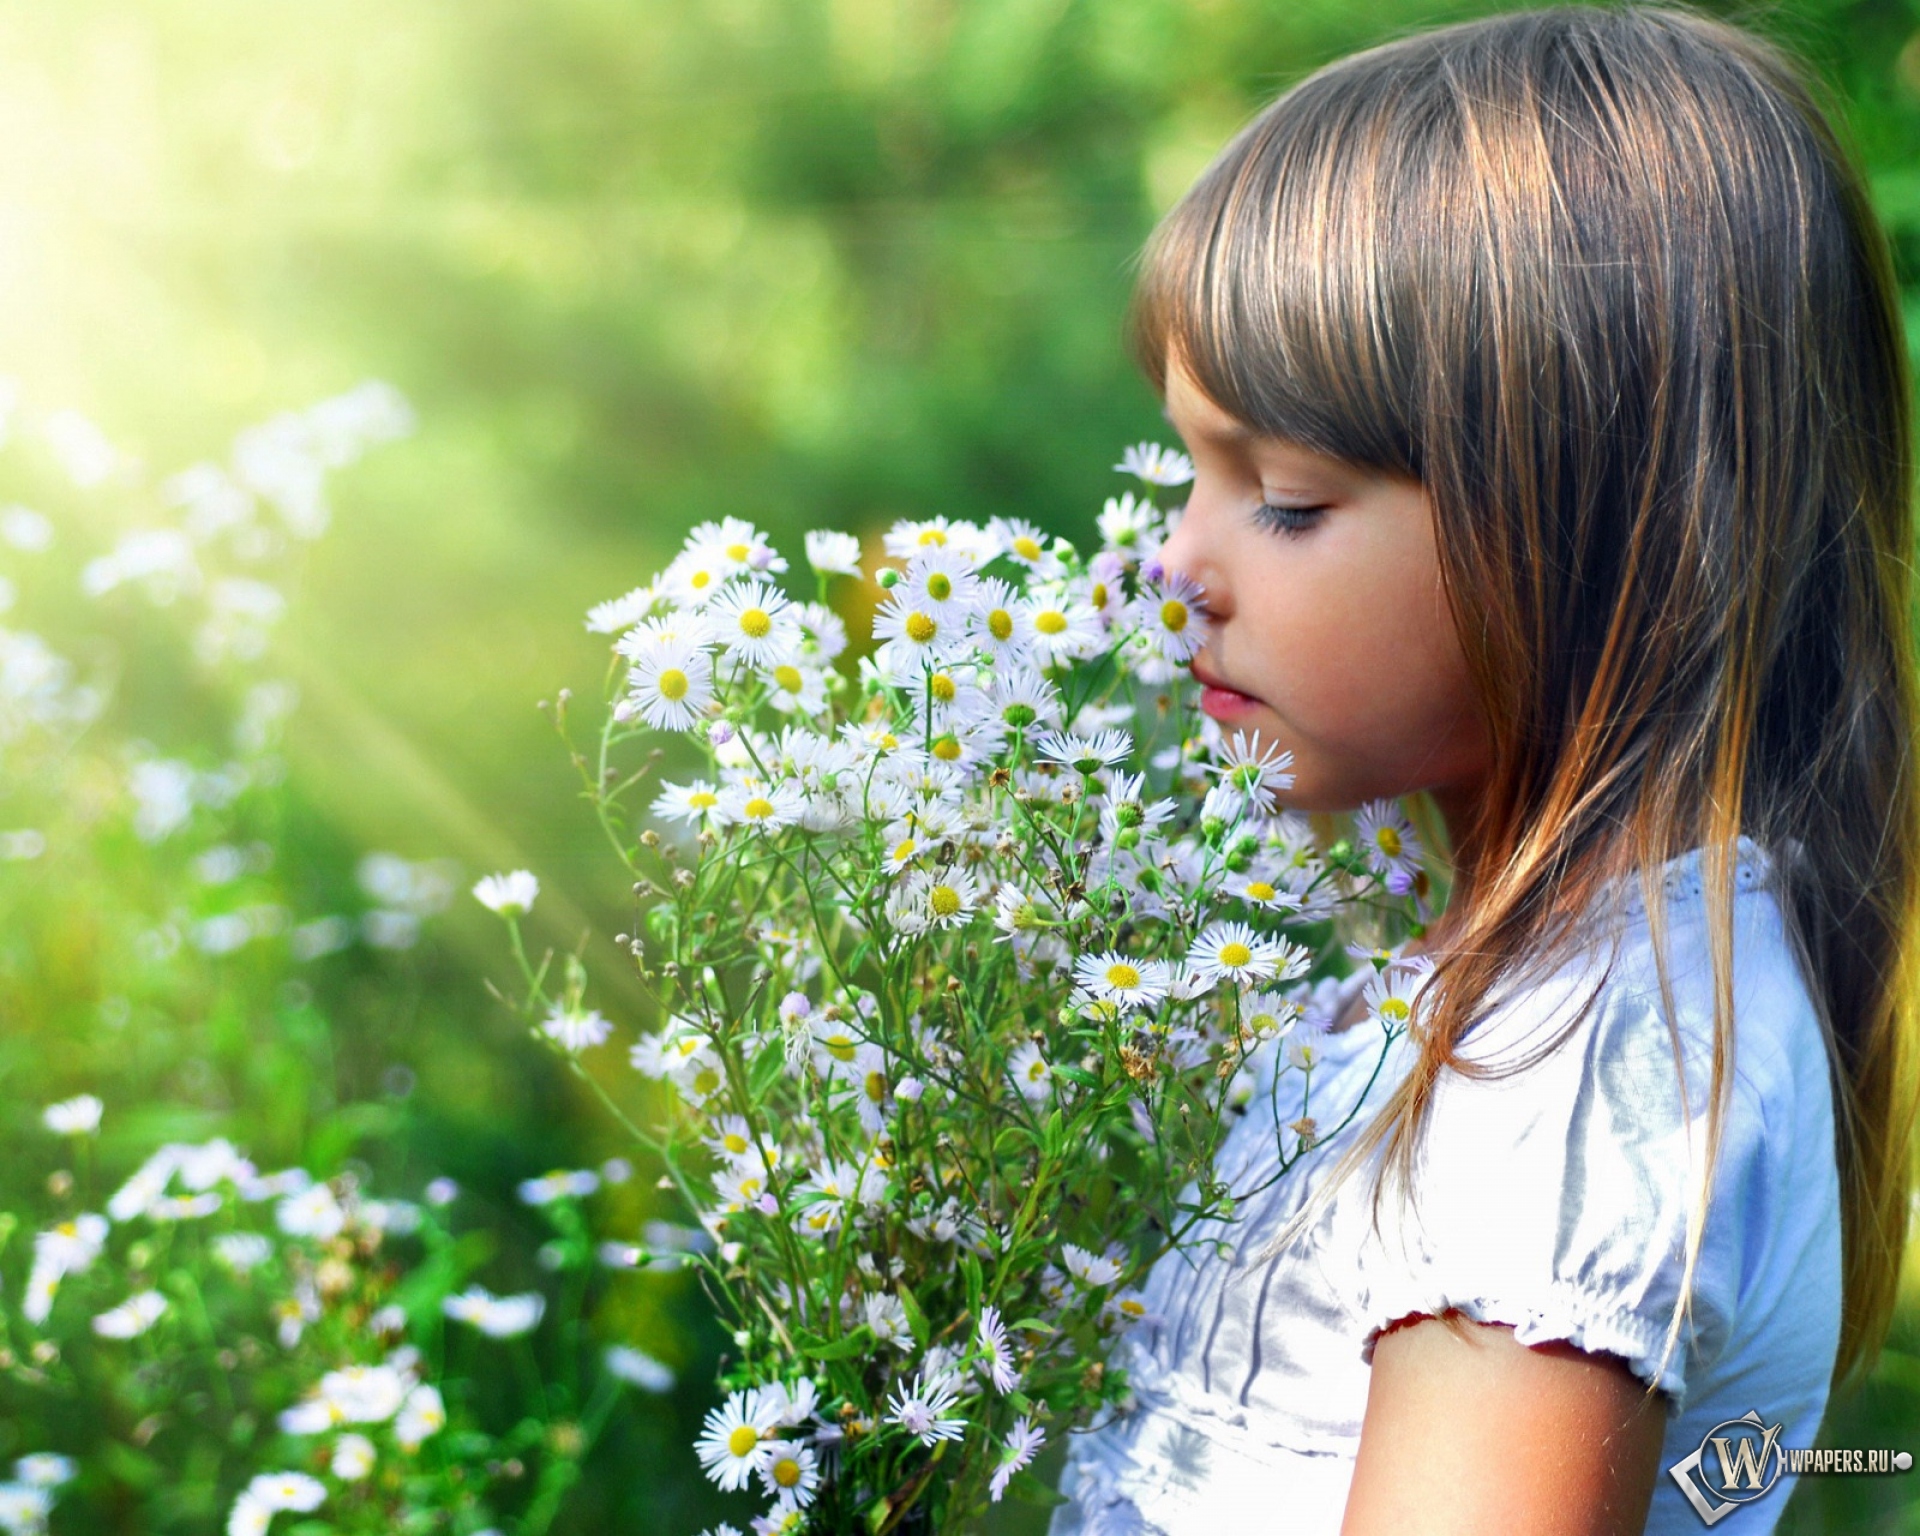 Я люблю маленьких девочек. Девочка с цветами. Ромашка для детей. Дети и природа.